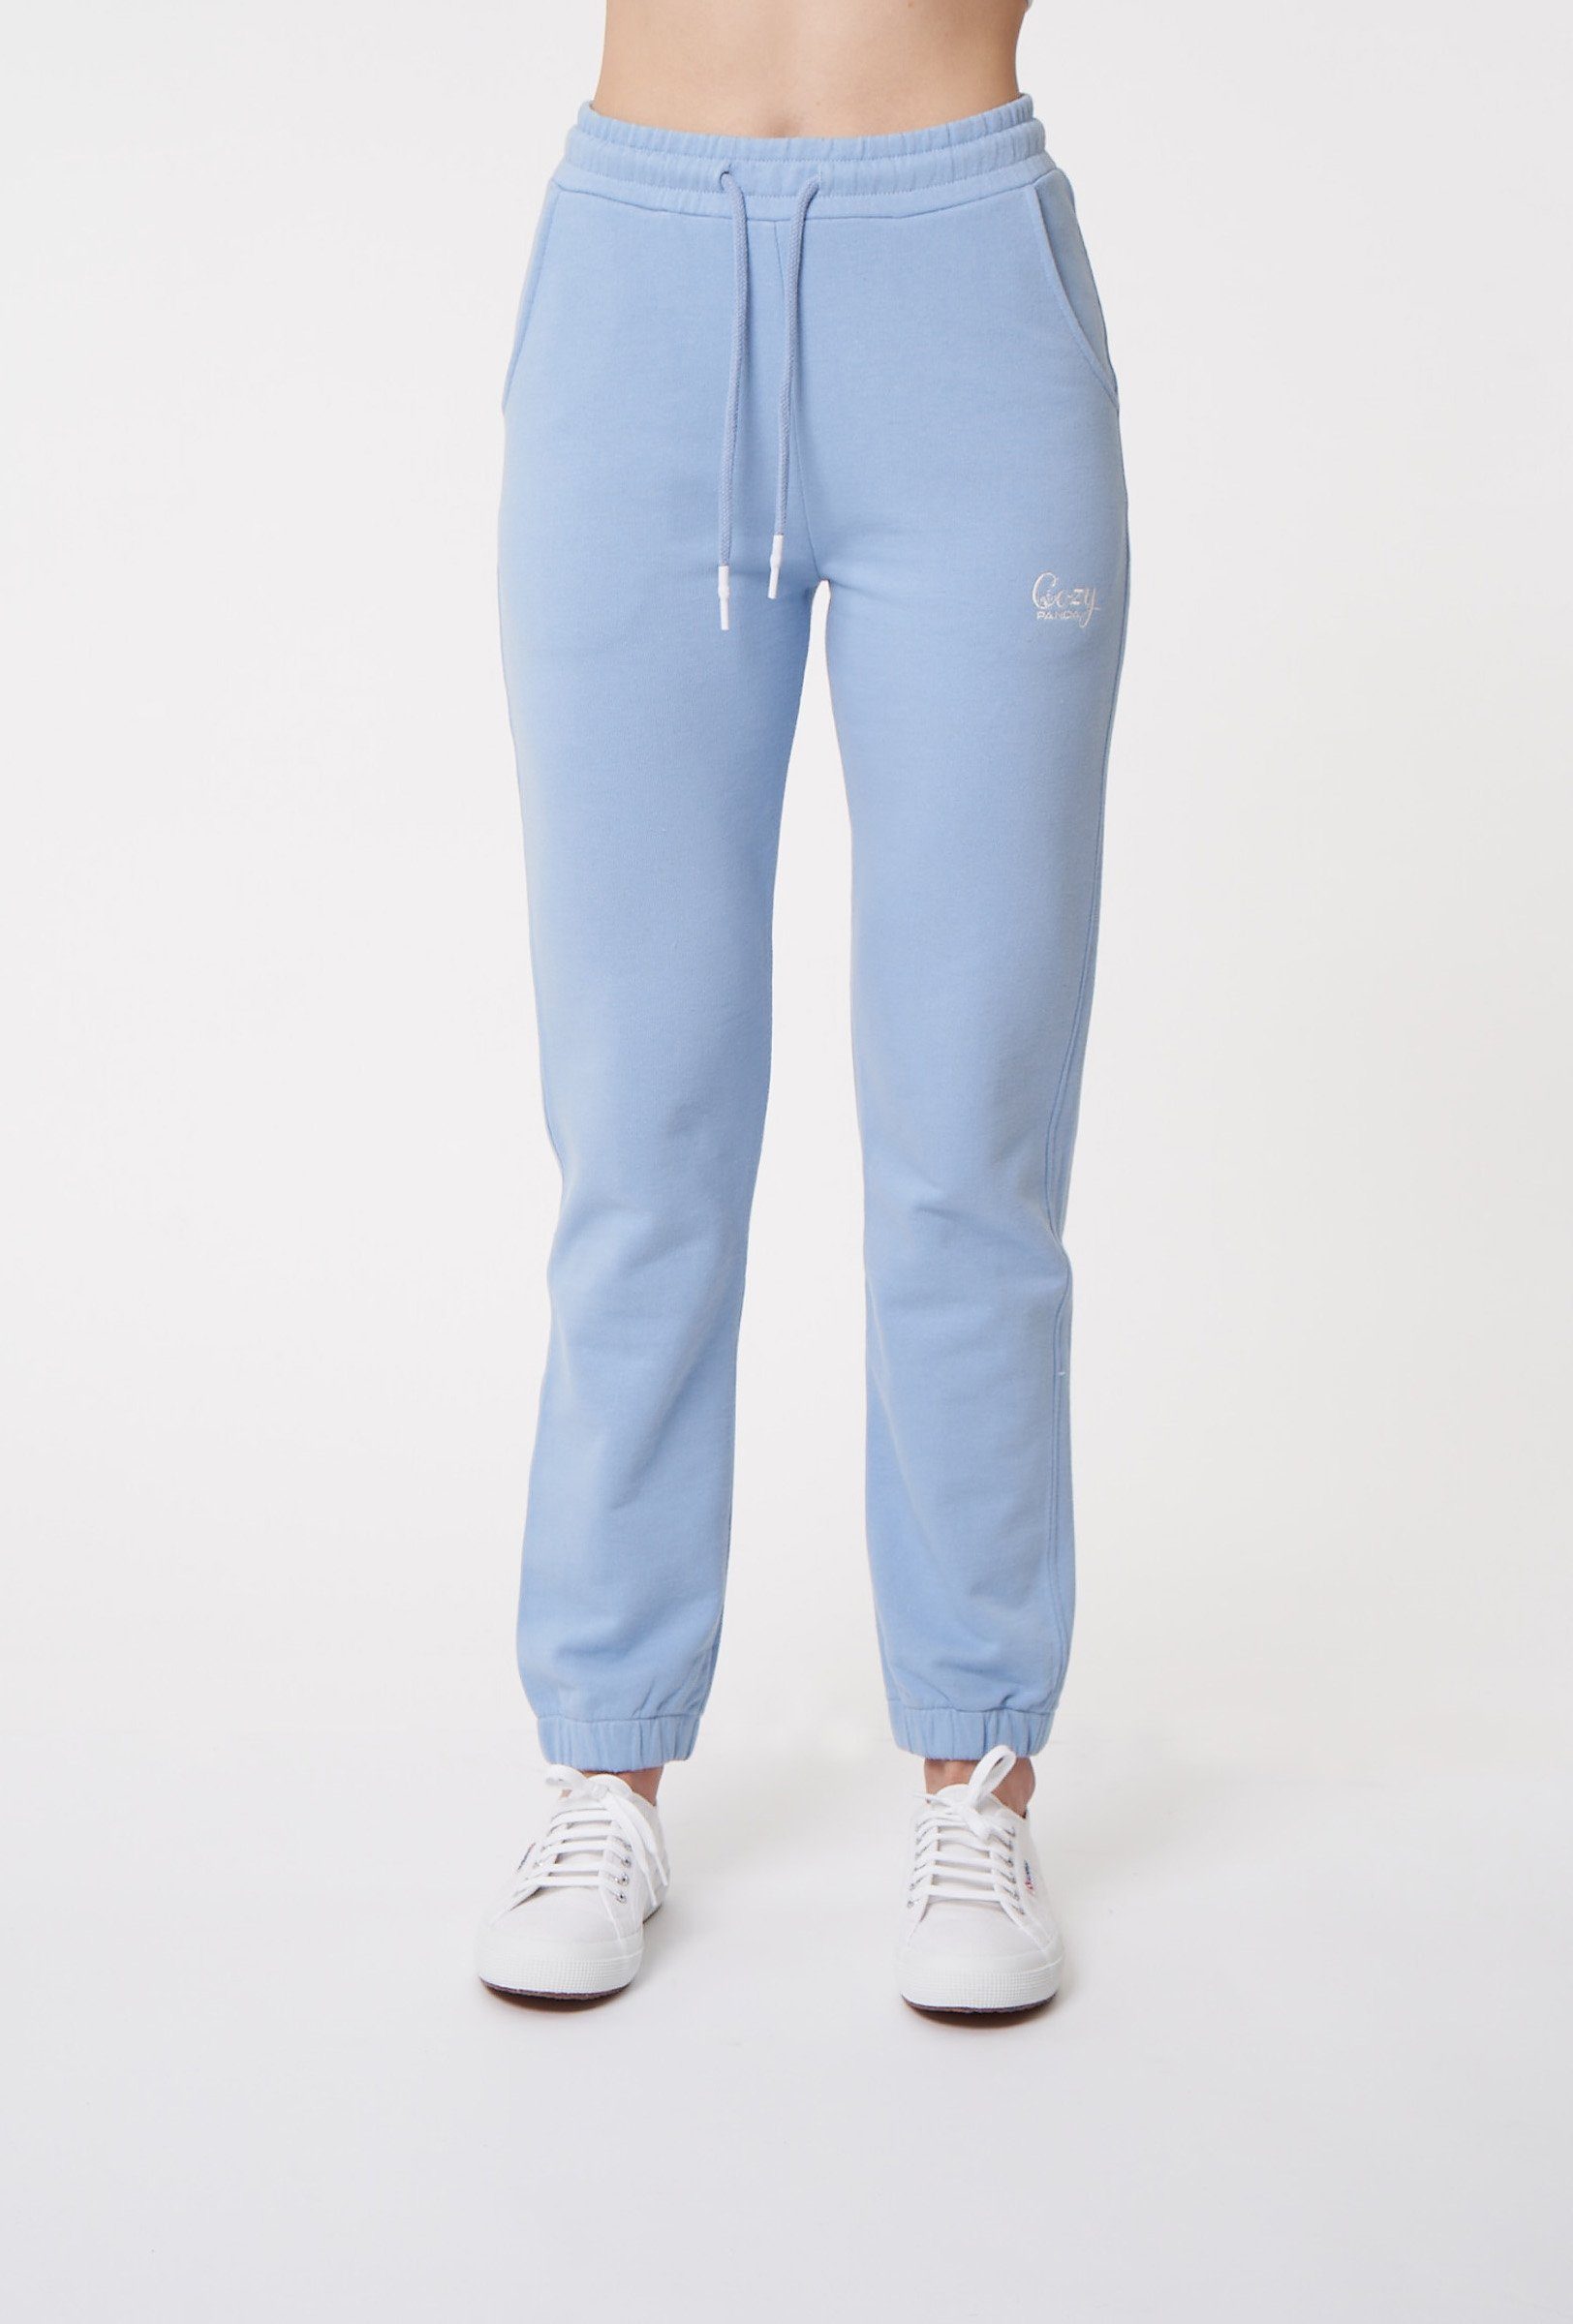 Blaue Jogginghosen für Damen online kaufen | OTTO